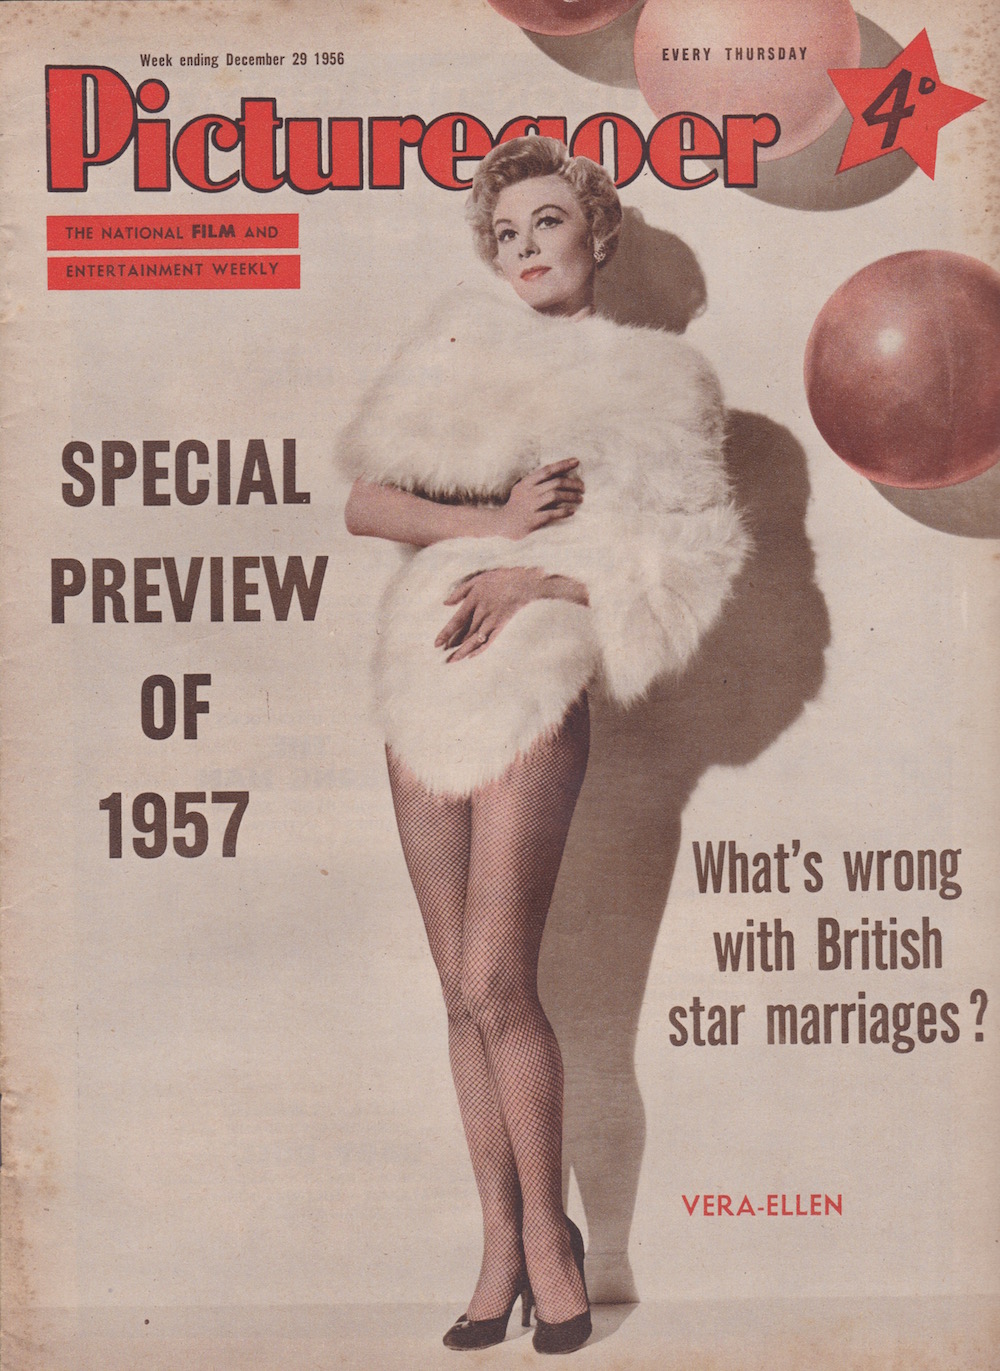 Picturegoer December 29 1957 Vera-Ellen cover